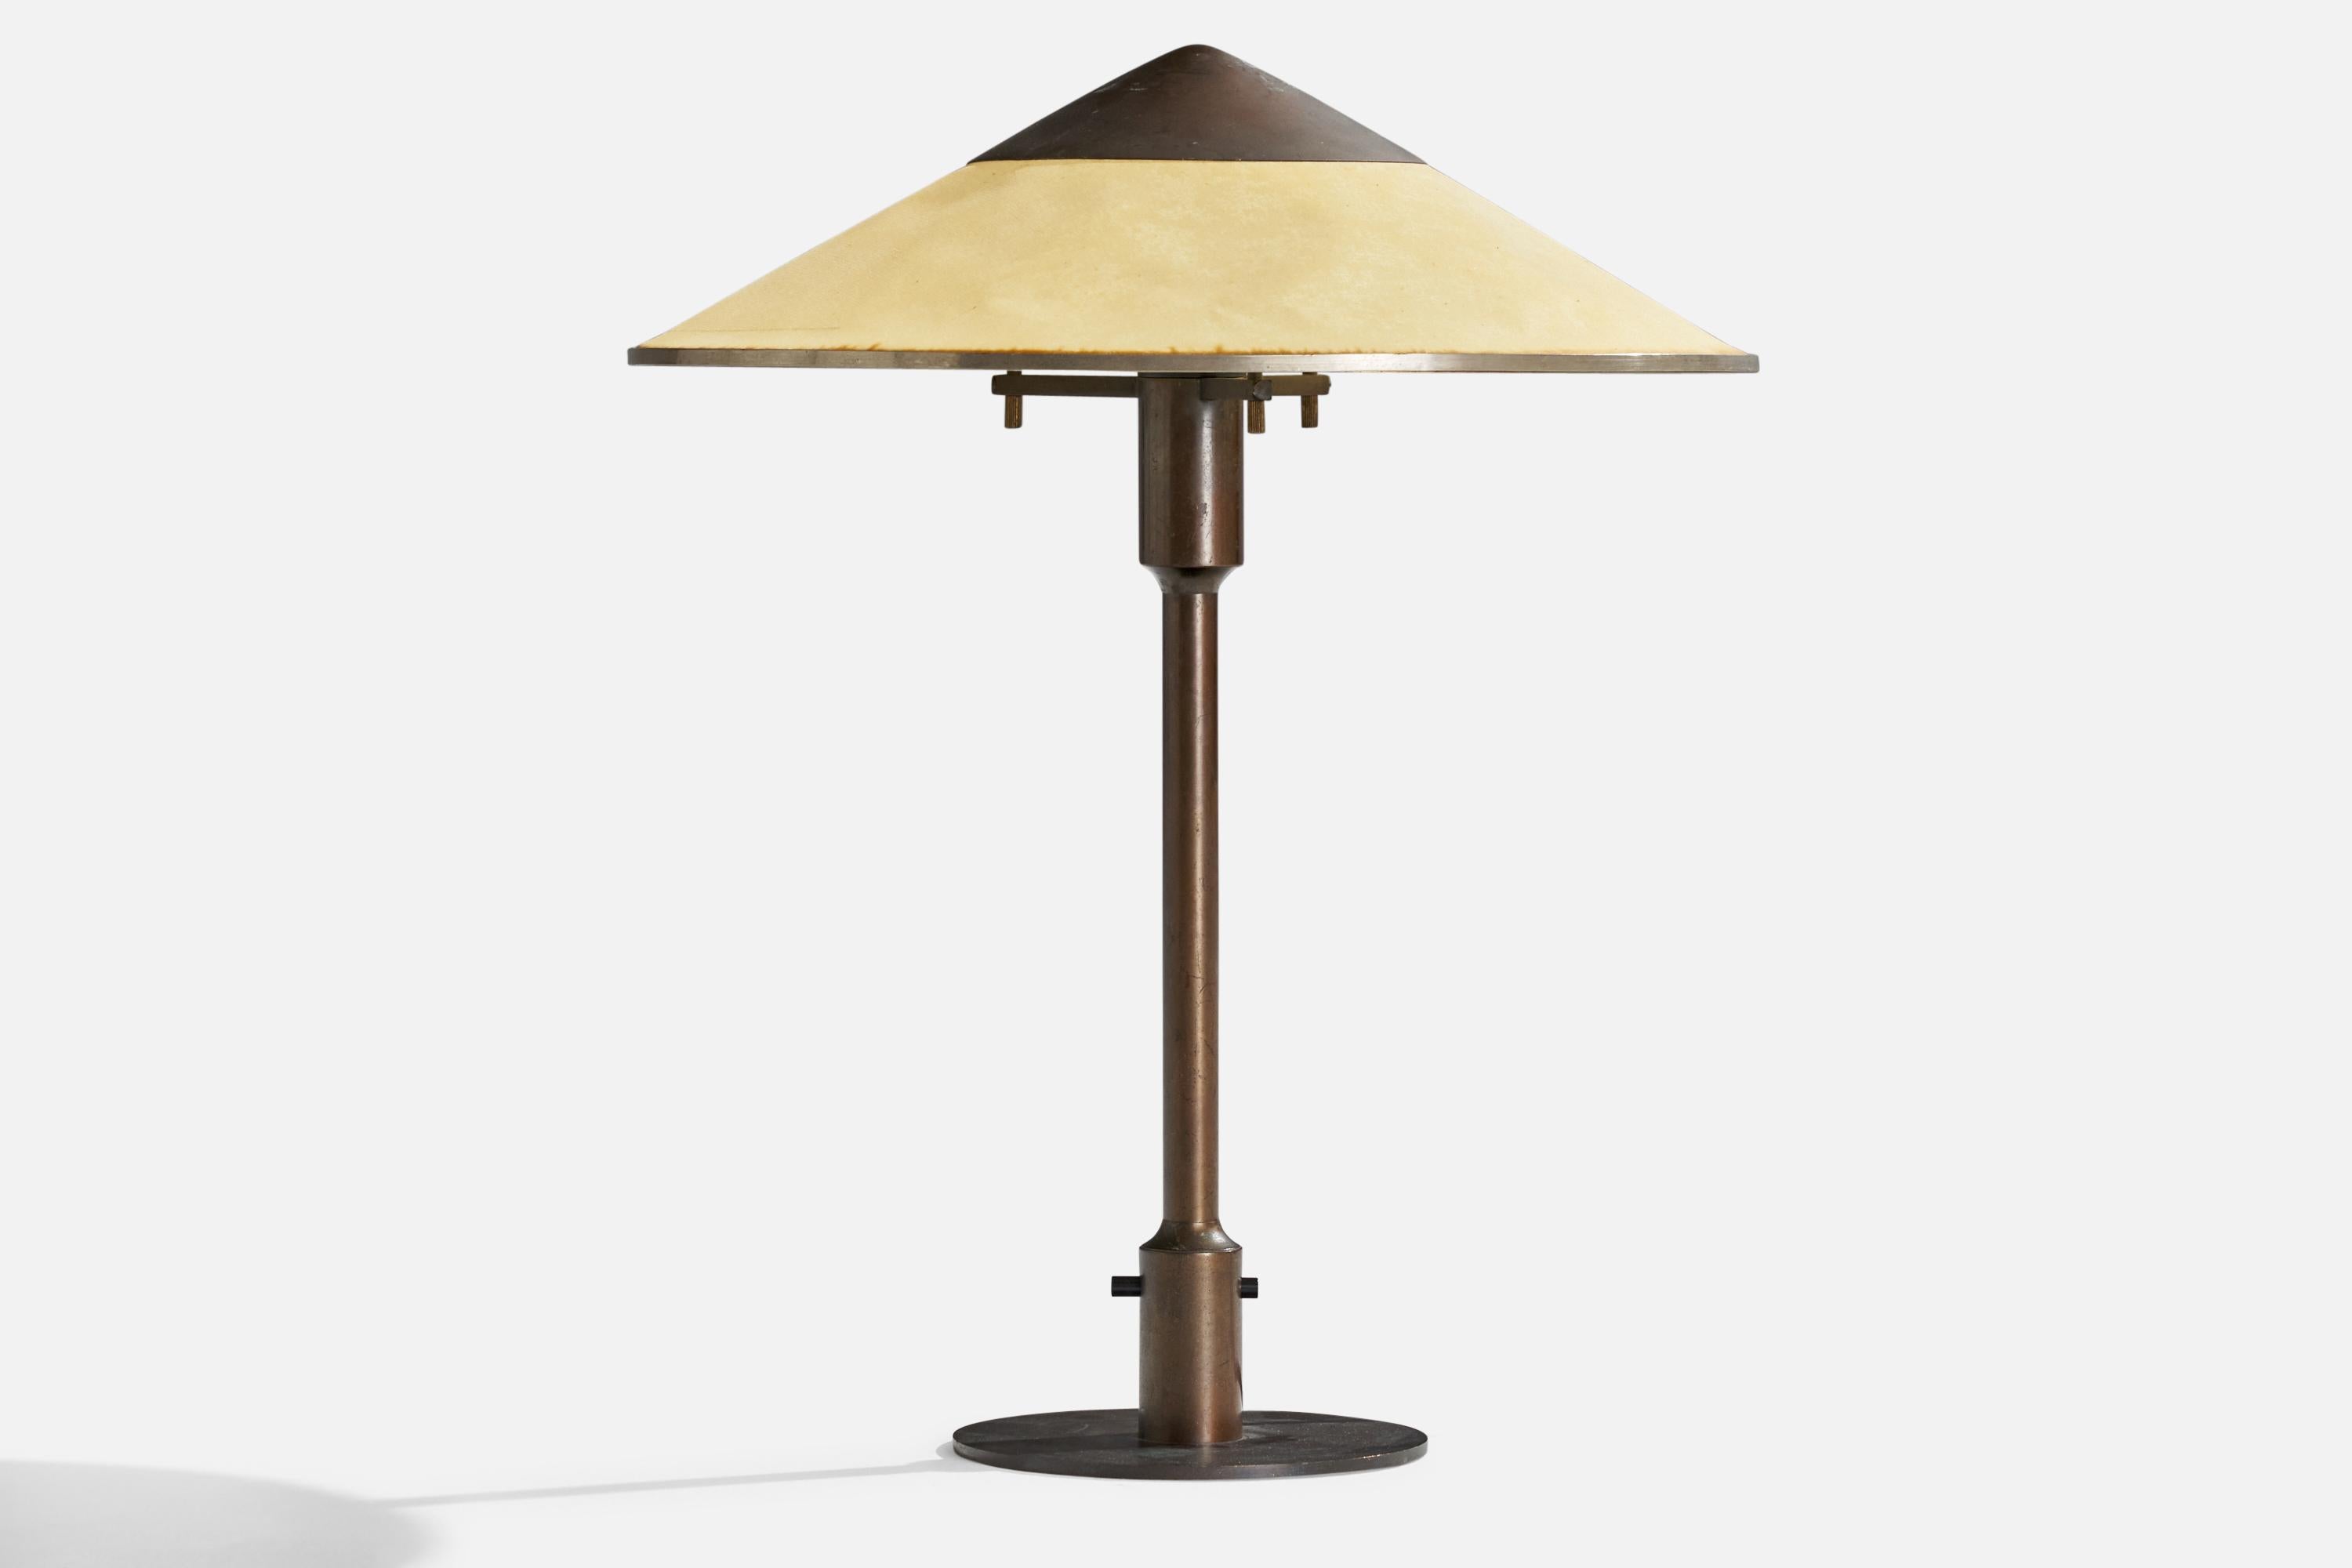 Lampe de table en cuivre et papier ciré jaune clair, conçue et produite par Niels Rasmussen Thykier, Danemark, années 1930.

Dimensions globales (pouces) : 19